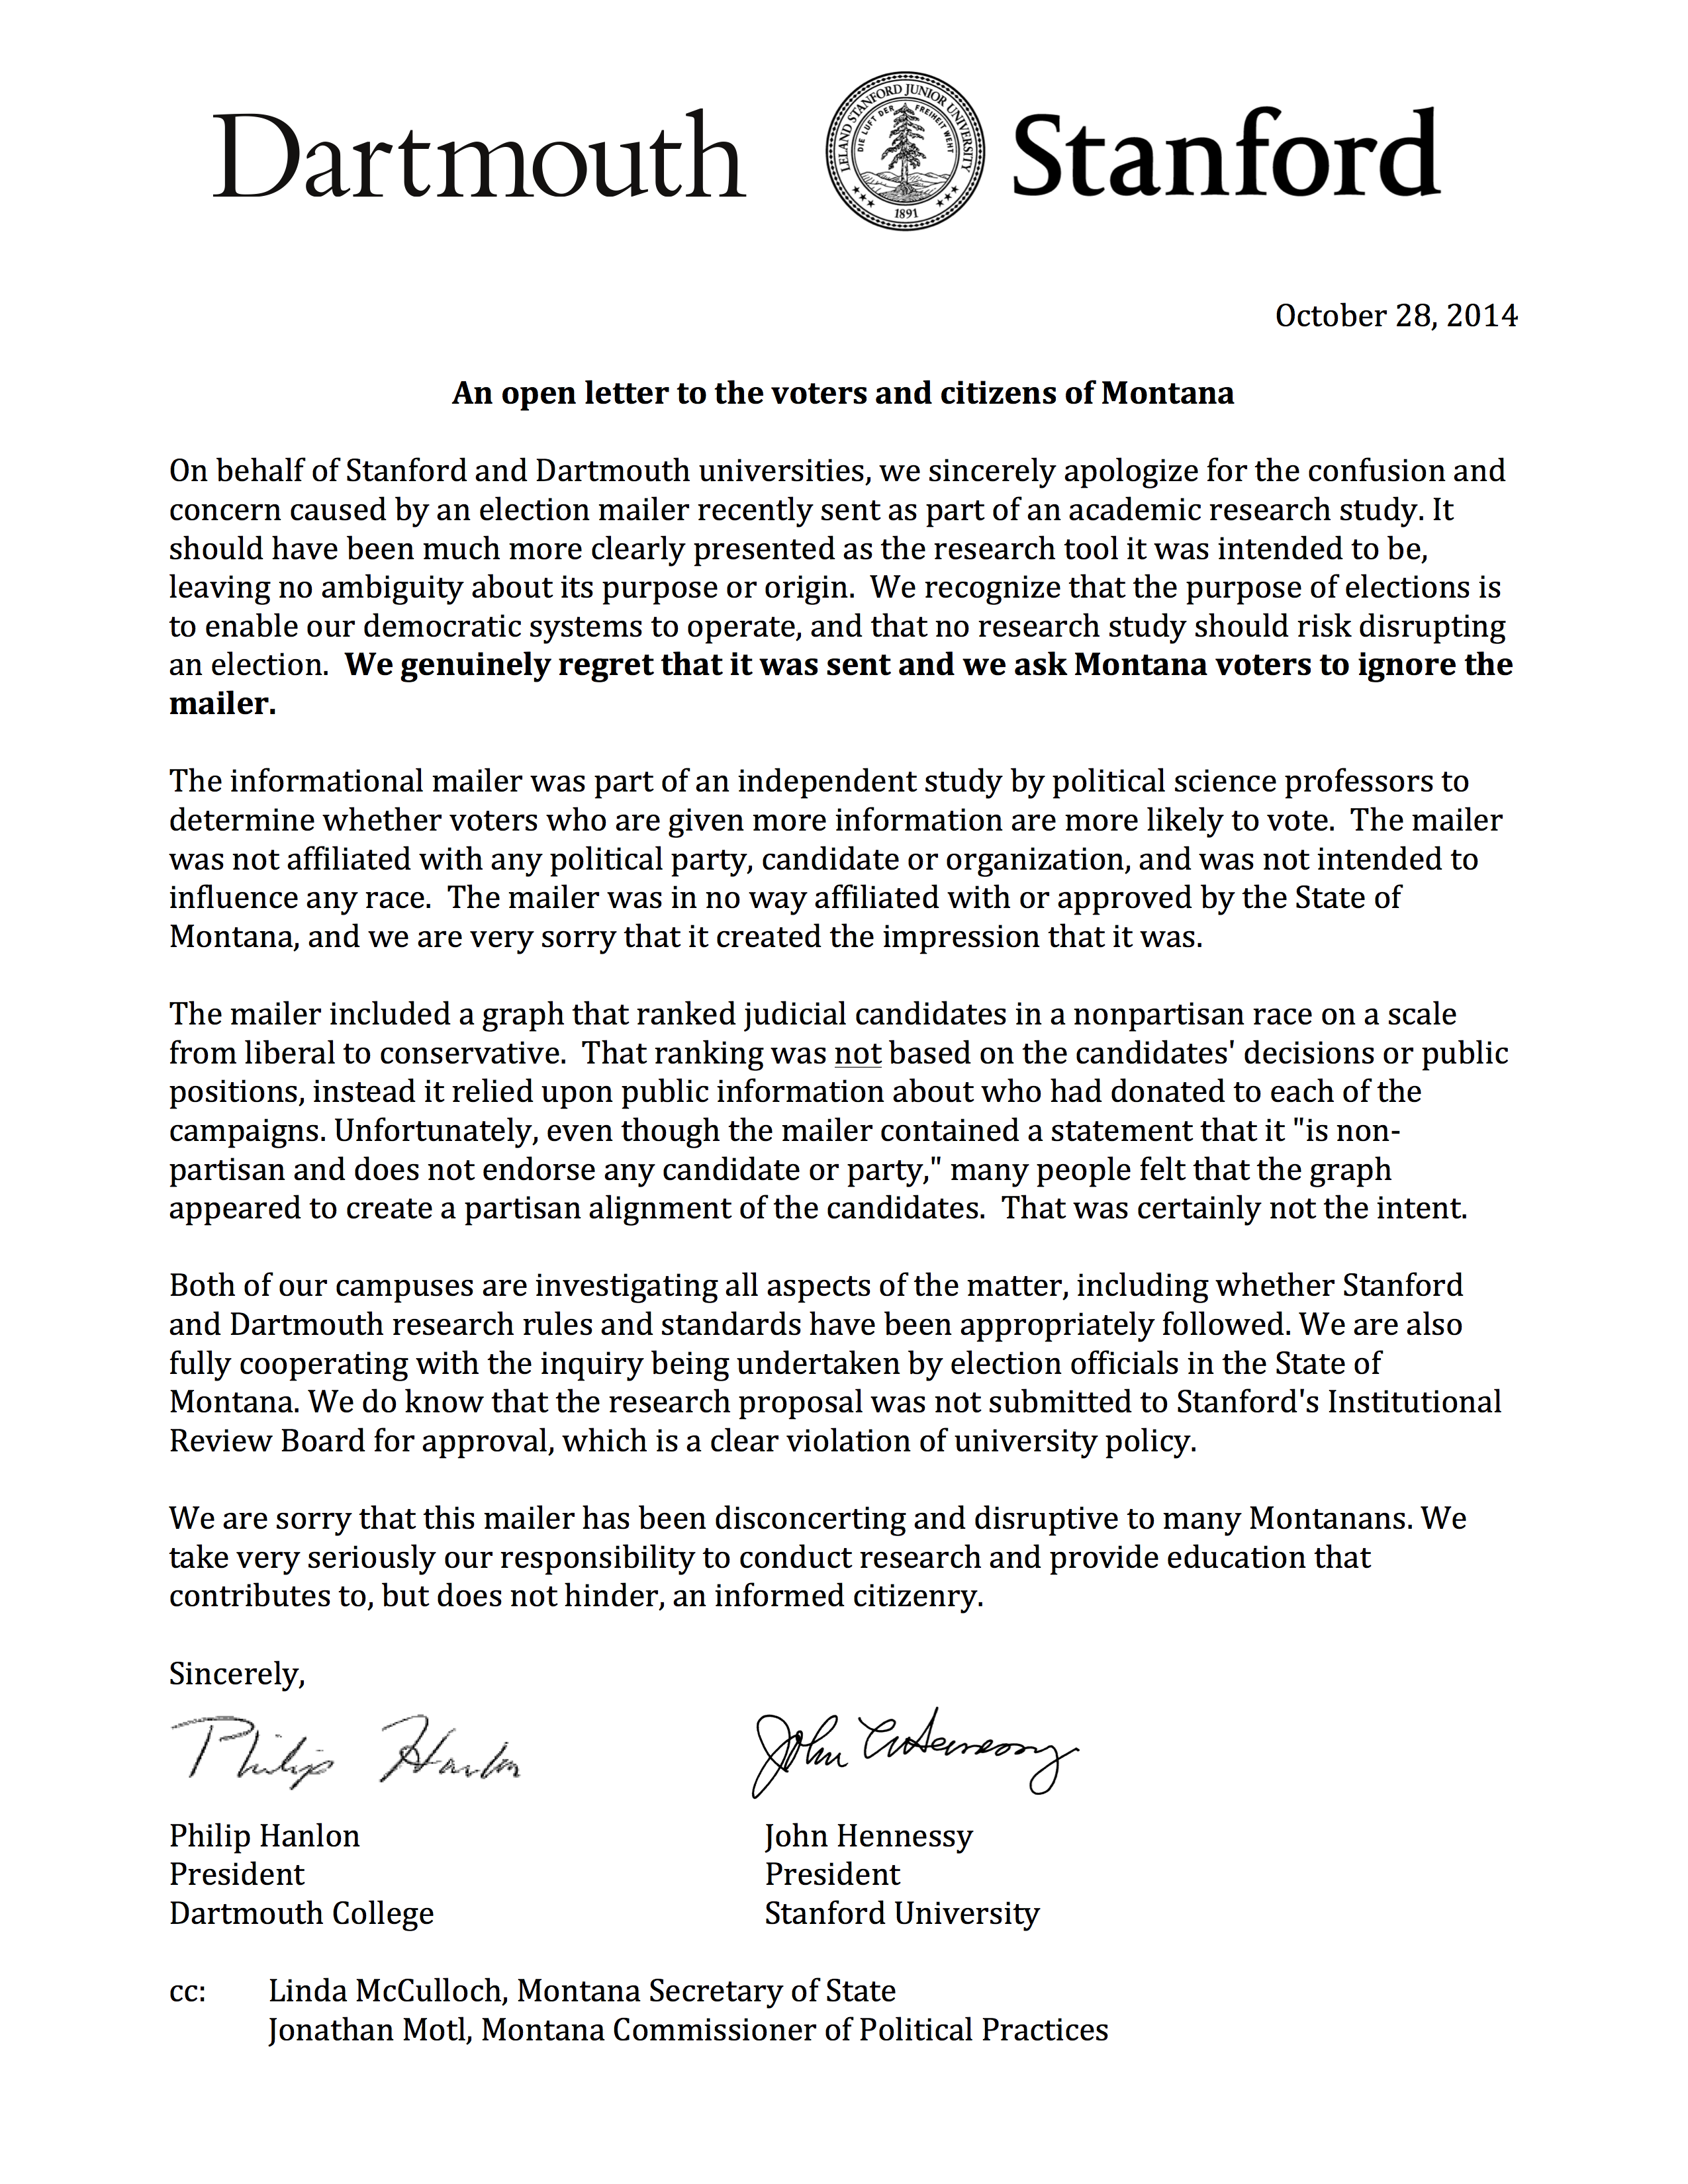 Фигура 6.11: Извинението писмо, изпратено до 102,780 регистрирани избиратели в Монтана, които са получили писмото на фигура 6.10. Писмото е изпратено от председателите на Dartmouth и Станфорд, университетите, които се използват изследователите, който е изпратил писмото.